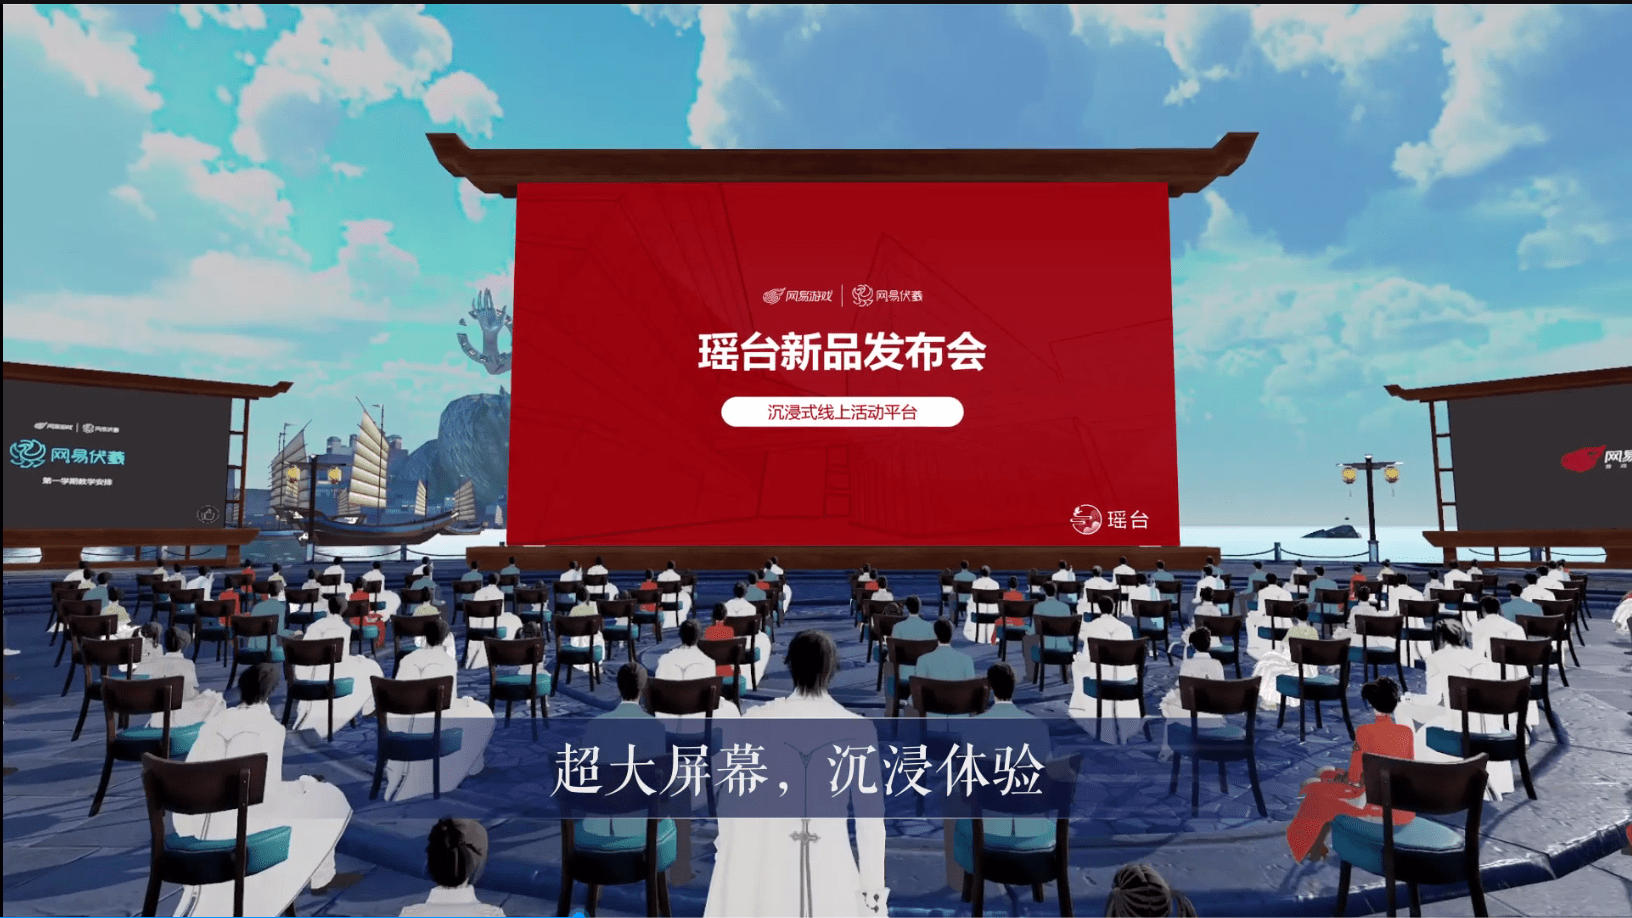 图片展示了一个虚拟现实场景，观众坐在椅子上，面向一个巨大的屏幕，屏幕上有中文文字和图案。